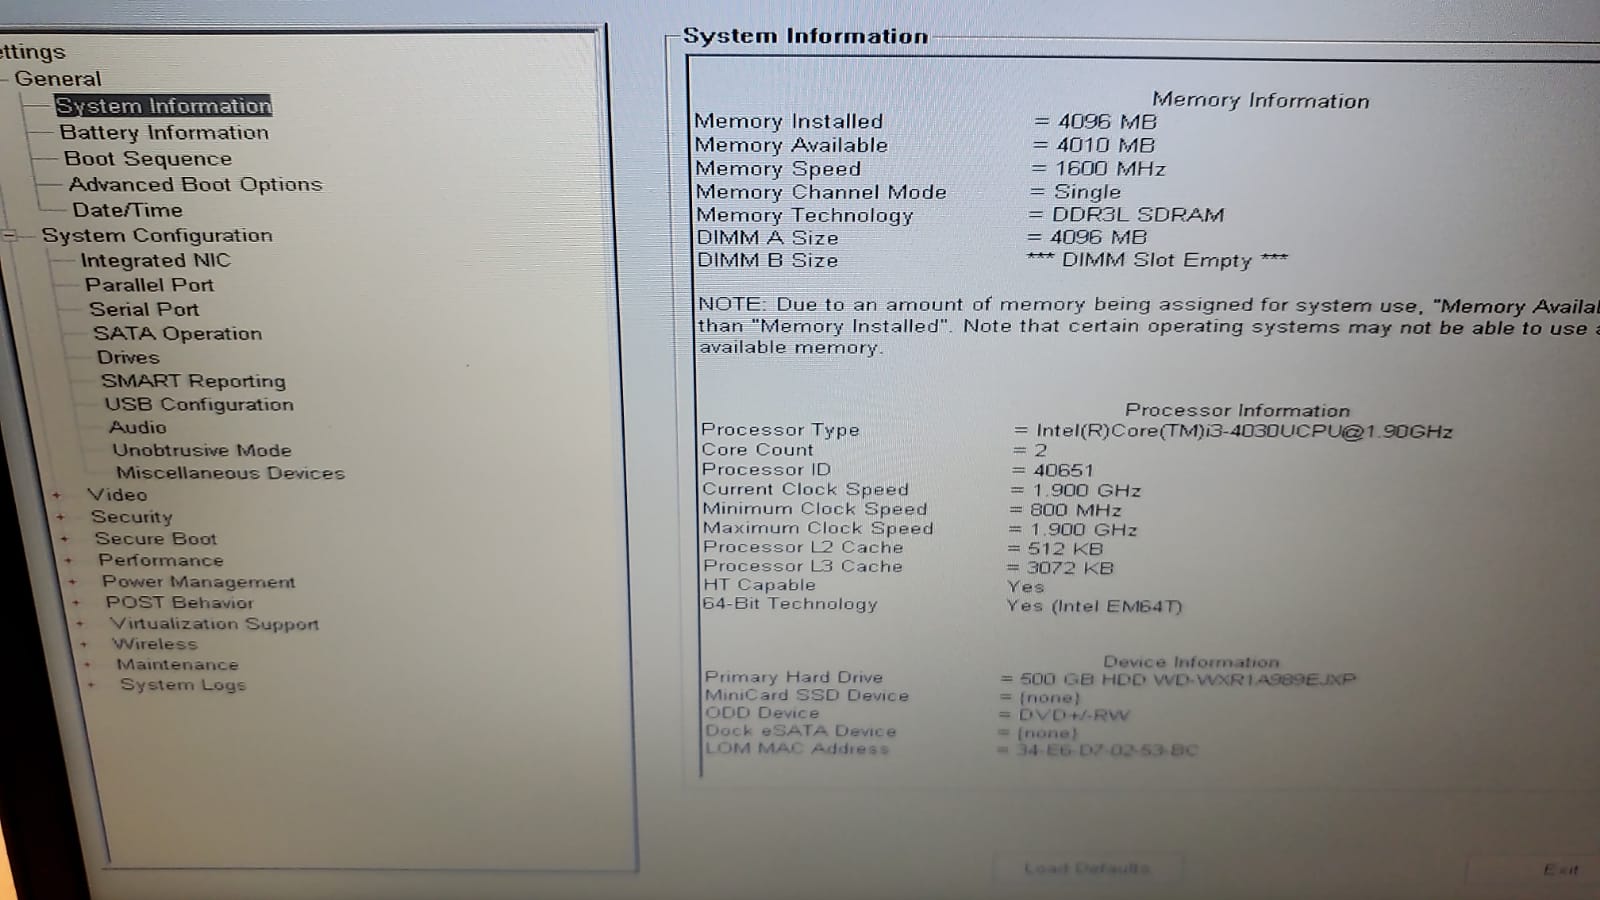 Laptop DELL Latitude E5440: Procesador Intel Core i3-4030U 1.9 GHz, Ram 4Gb, Disco 500 Gb, Display 14.0” 1366x768, con DVD-RW, sin Webcam, bluetooth, teclado ingles, S.O. Win 7 64 bits, refurb offlease puede presentar signos de uso, garantia 6 meses, con caja